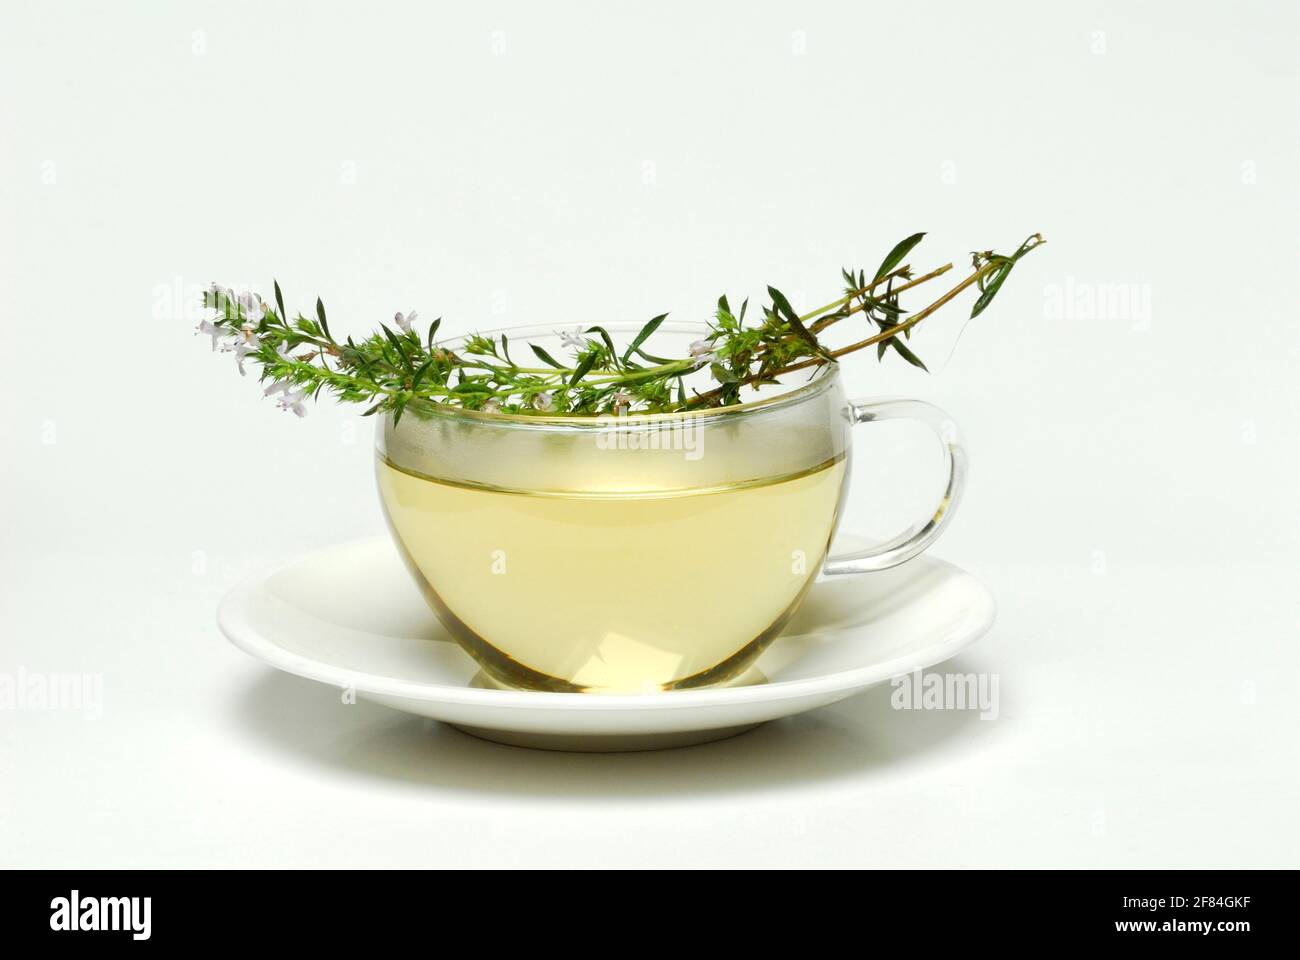 Tasse de thé salé (Satureja montana), thé salé, salé d'hiver, salé de montagne, salé, tasse à thé Banque D'Images